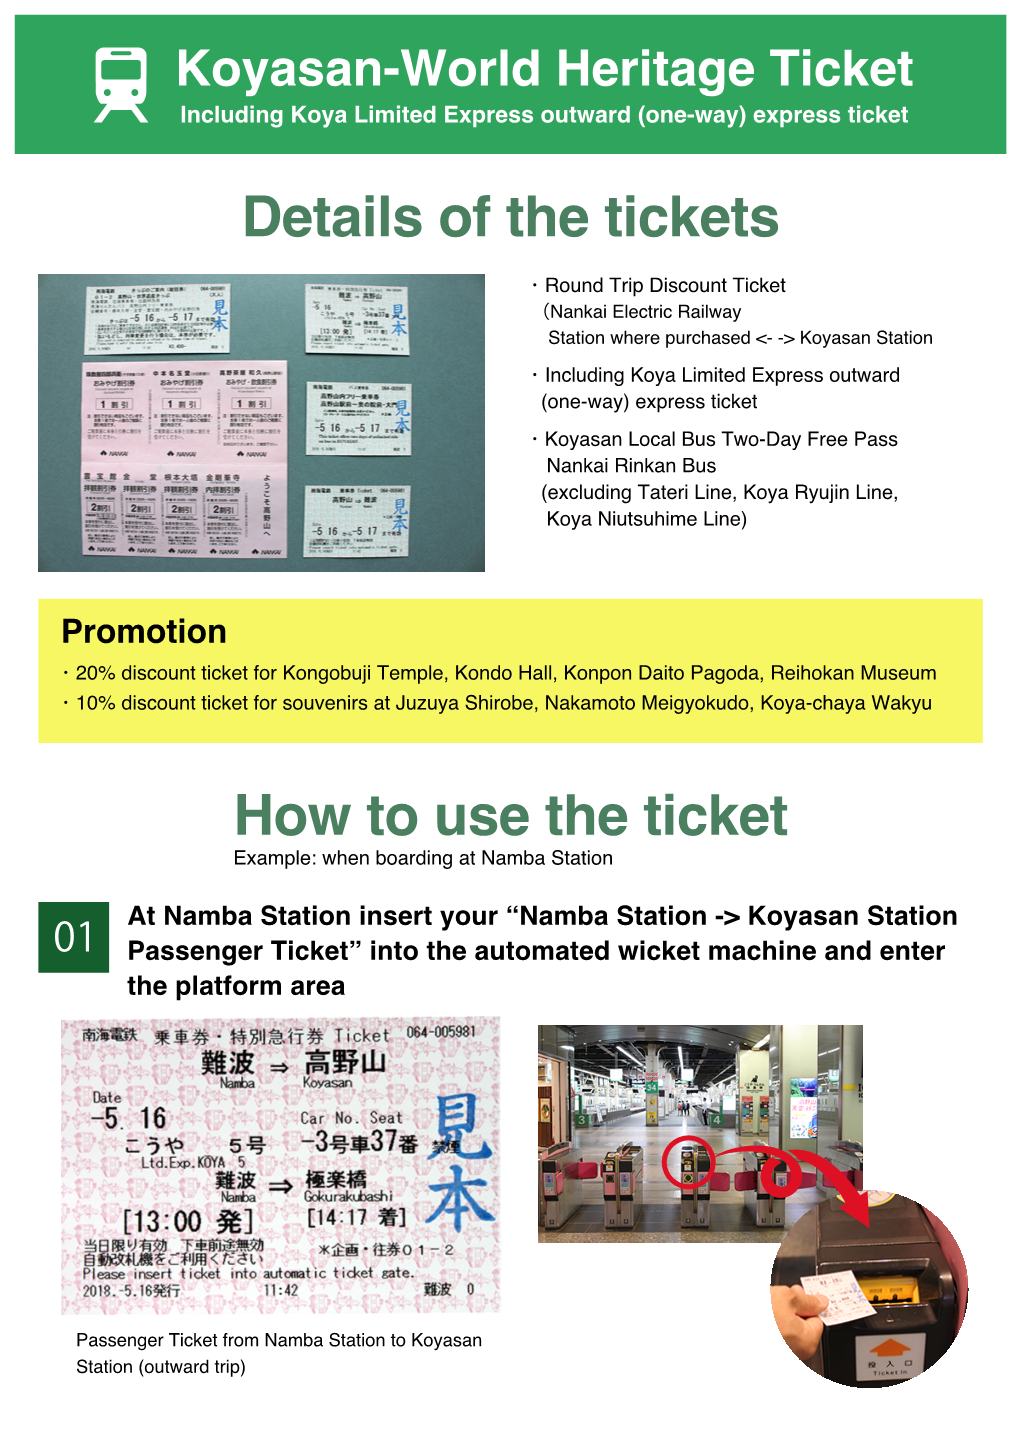 Namba Station -&gt; Koyasan Station Passenger Ticket